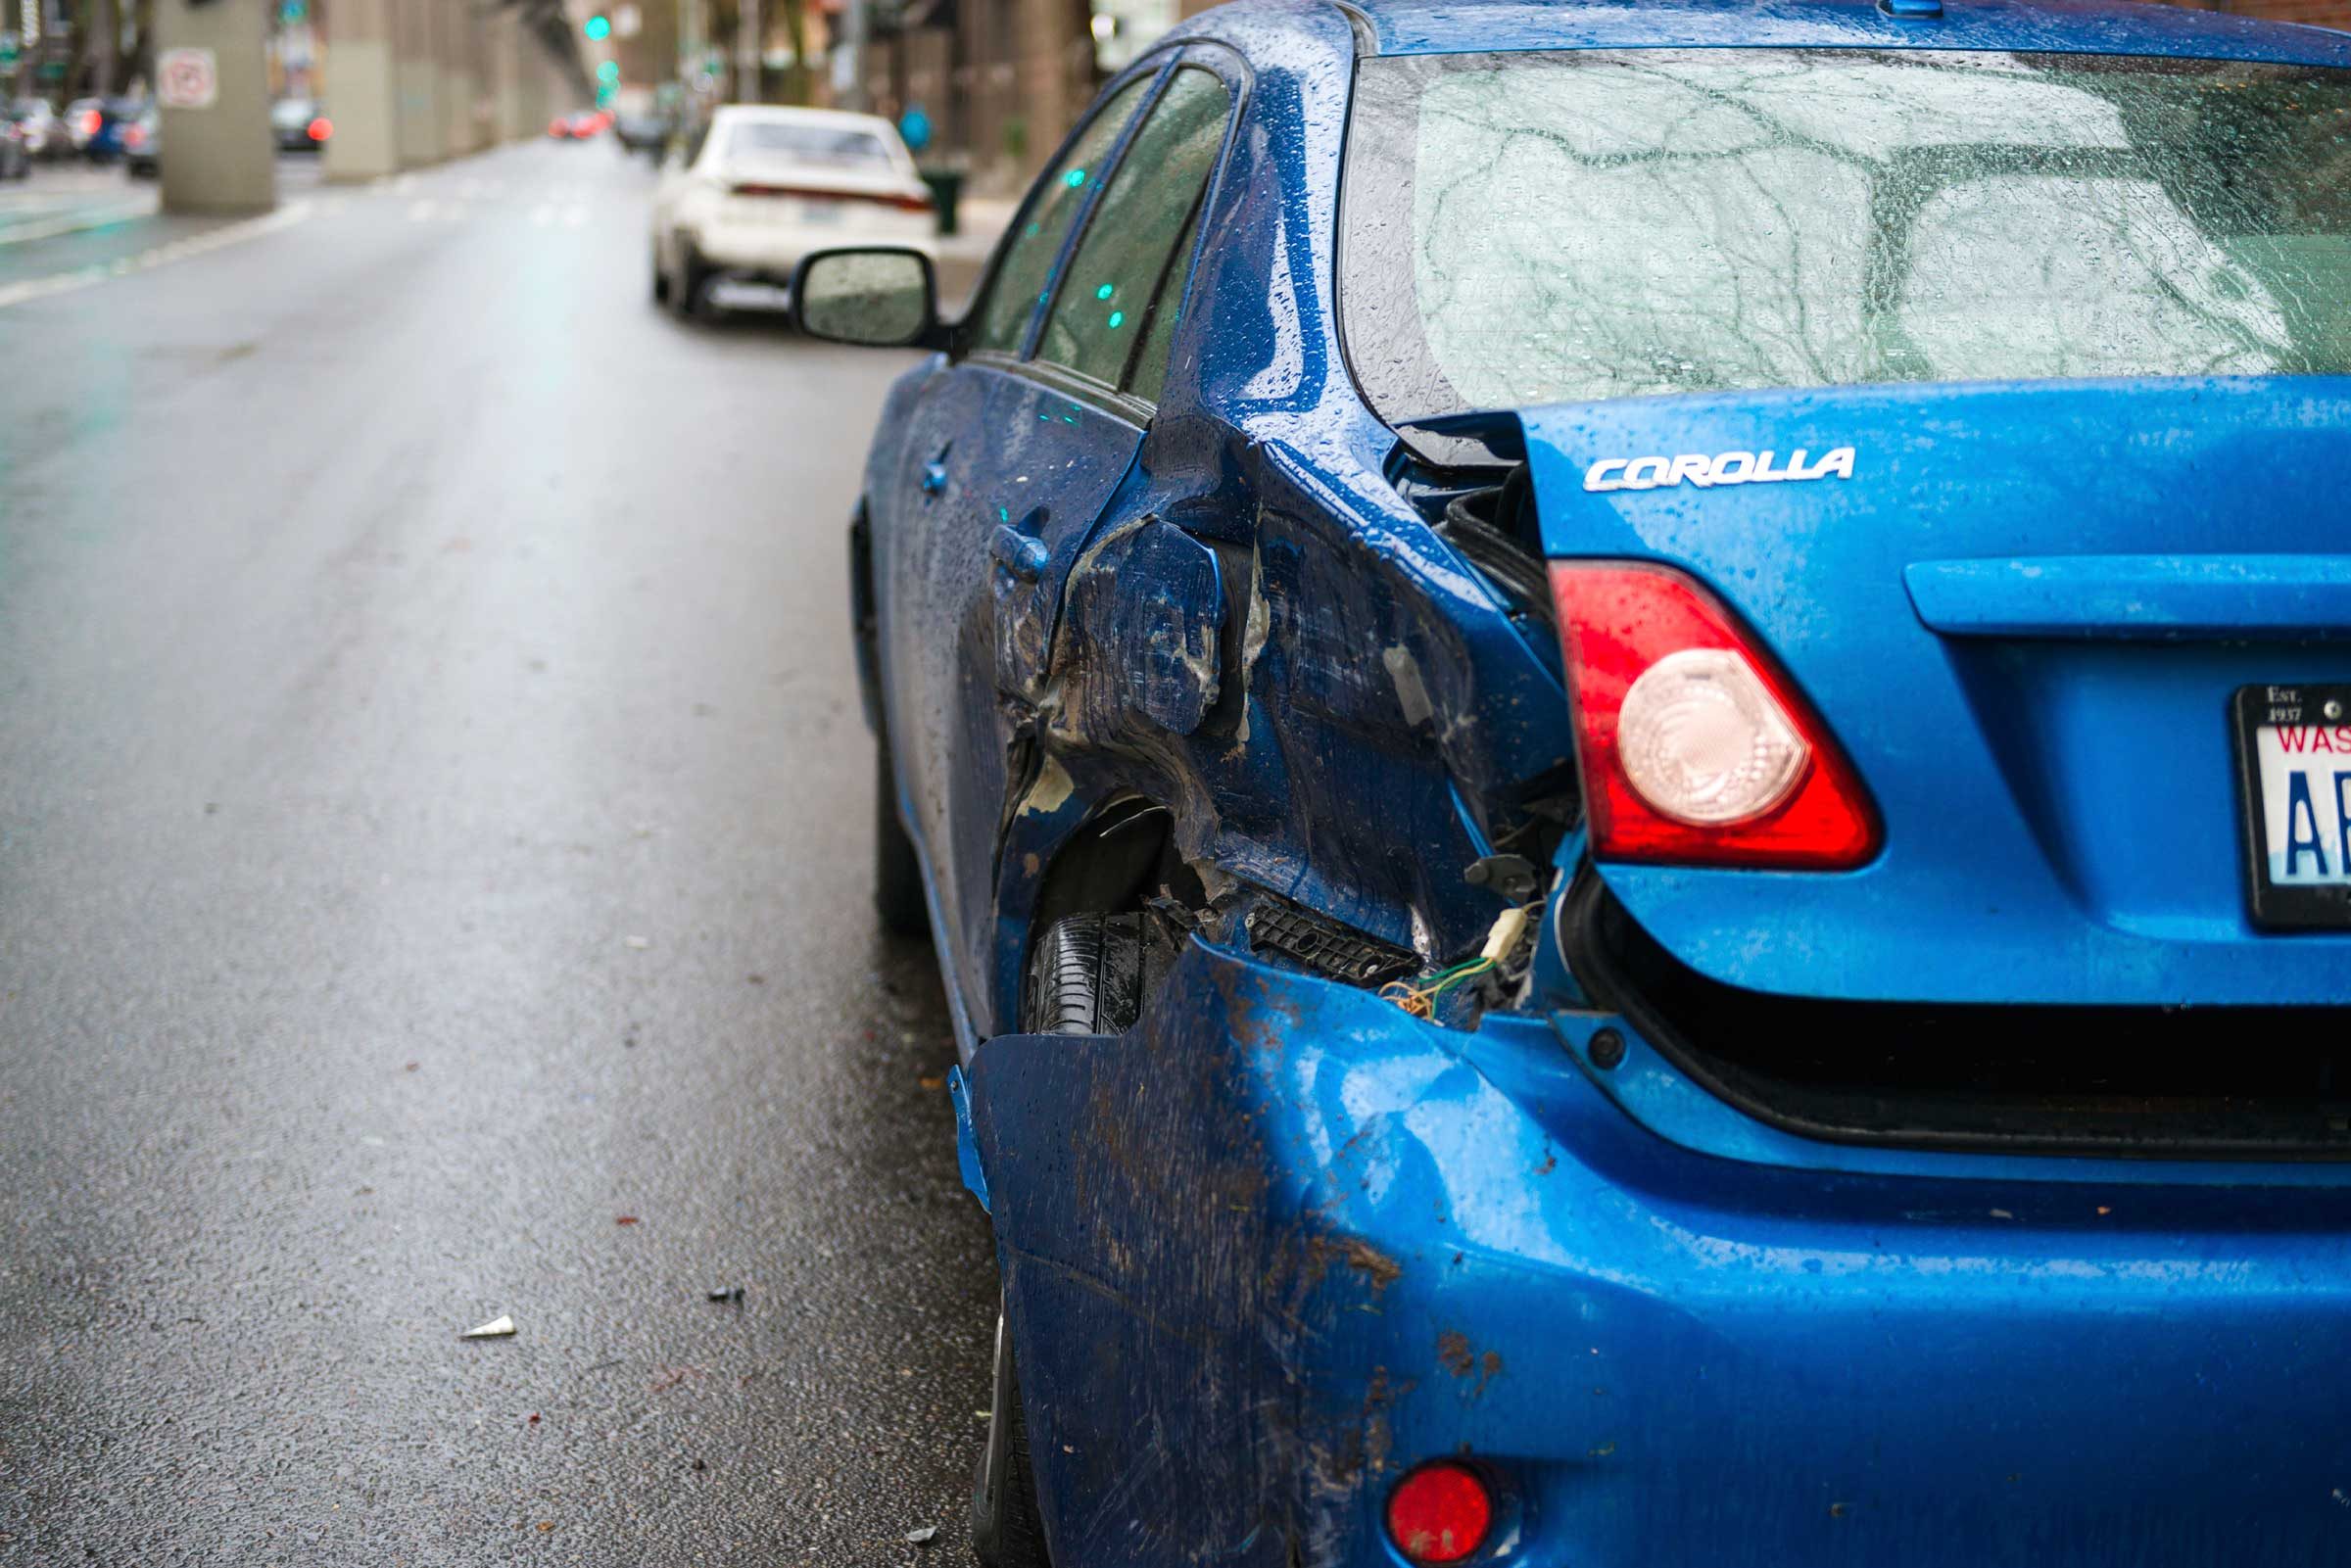 Reivindicações de seguro de carro:15 das desculpas mais bizarras já apresentadas 